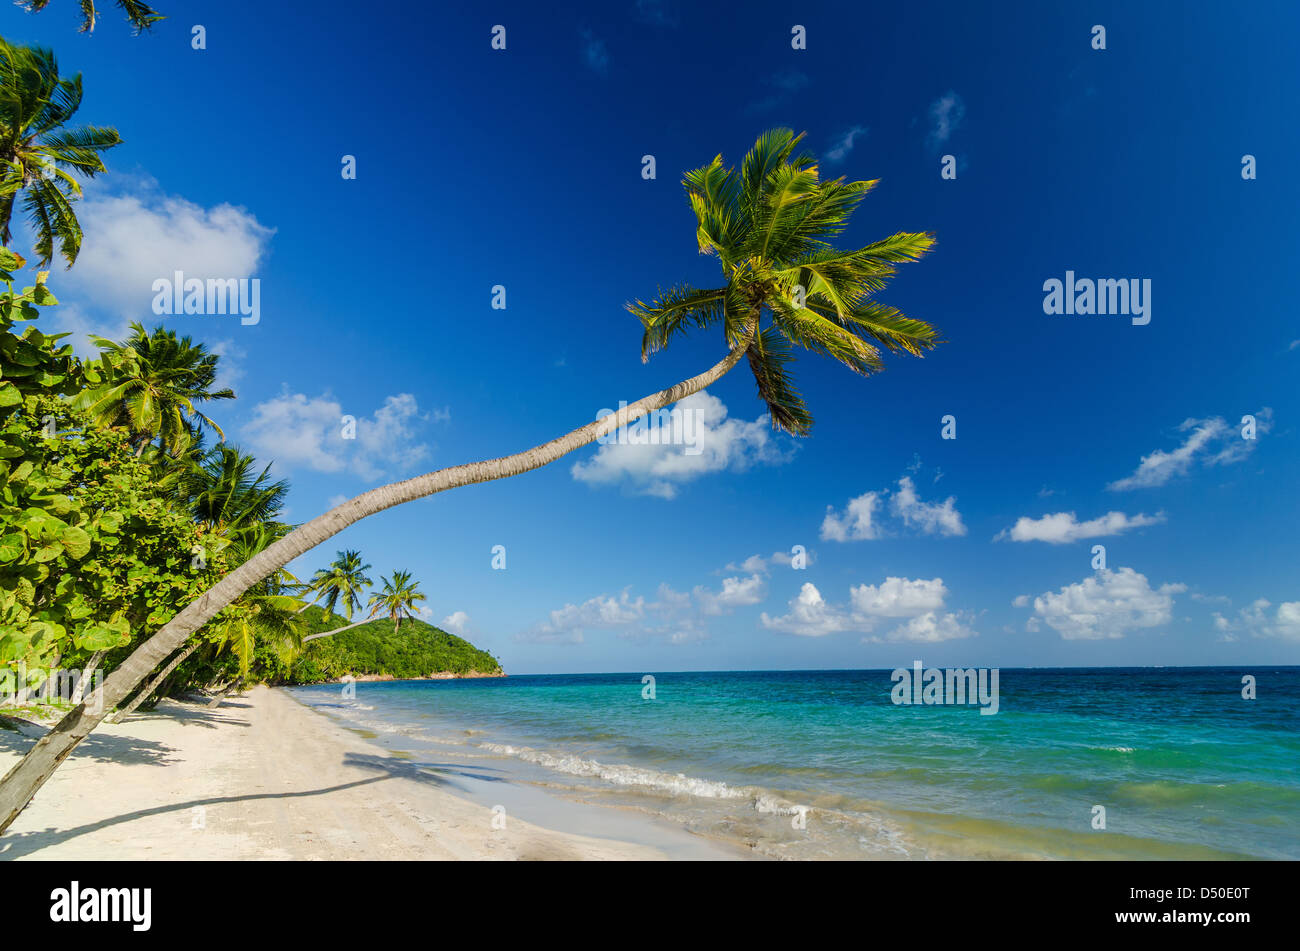 Una palmera en una playa de arena blanca y agua turquesa del Mar Caribe Foto de stock